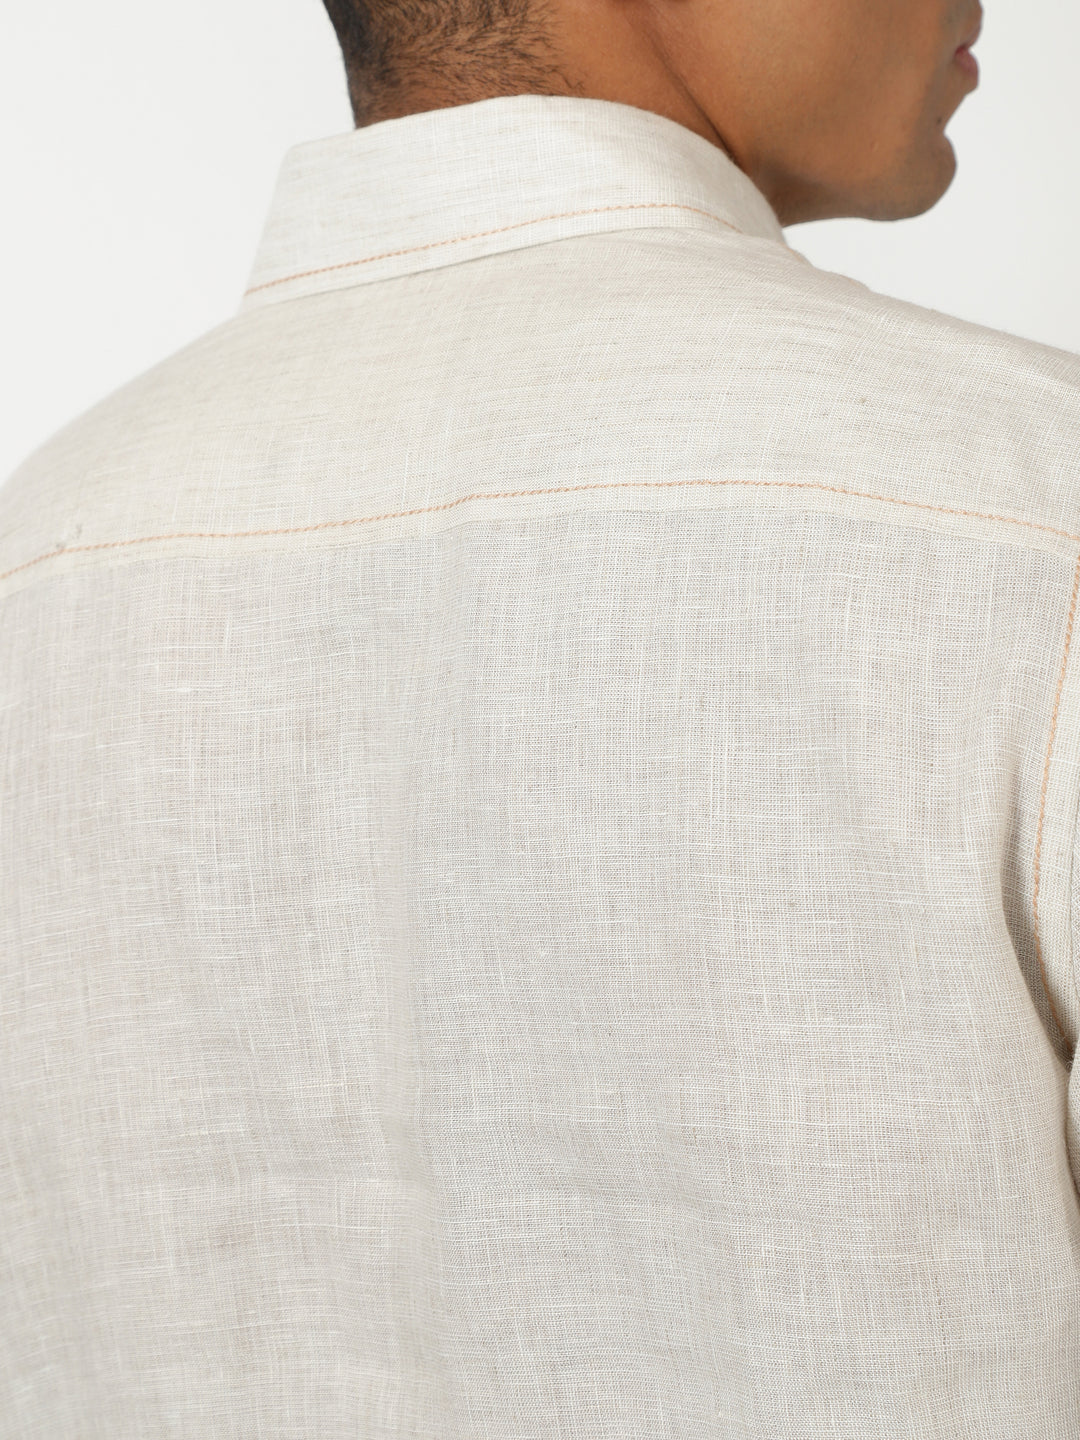 Paul - Pure Linen Stitch Detailed Full Sleeve Shirt - Light Ecru